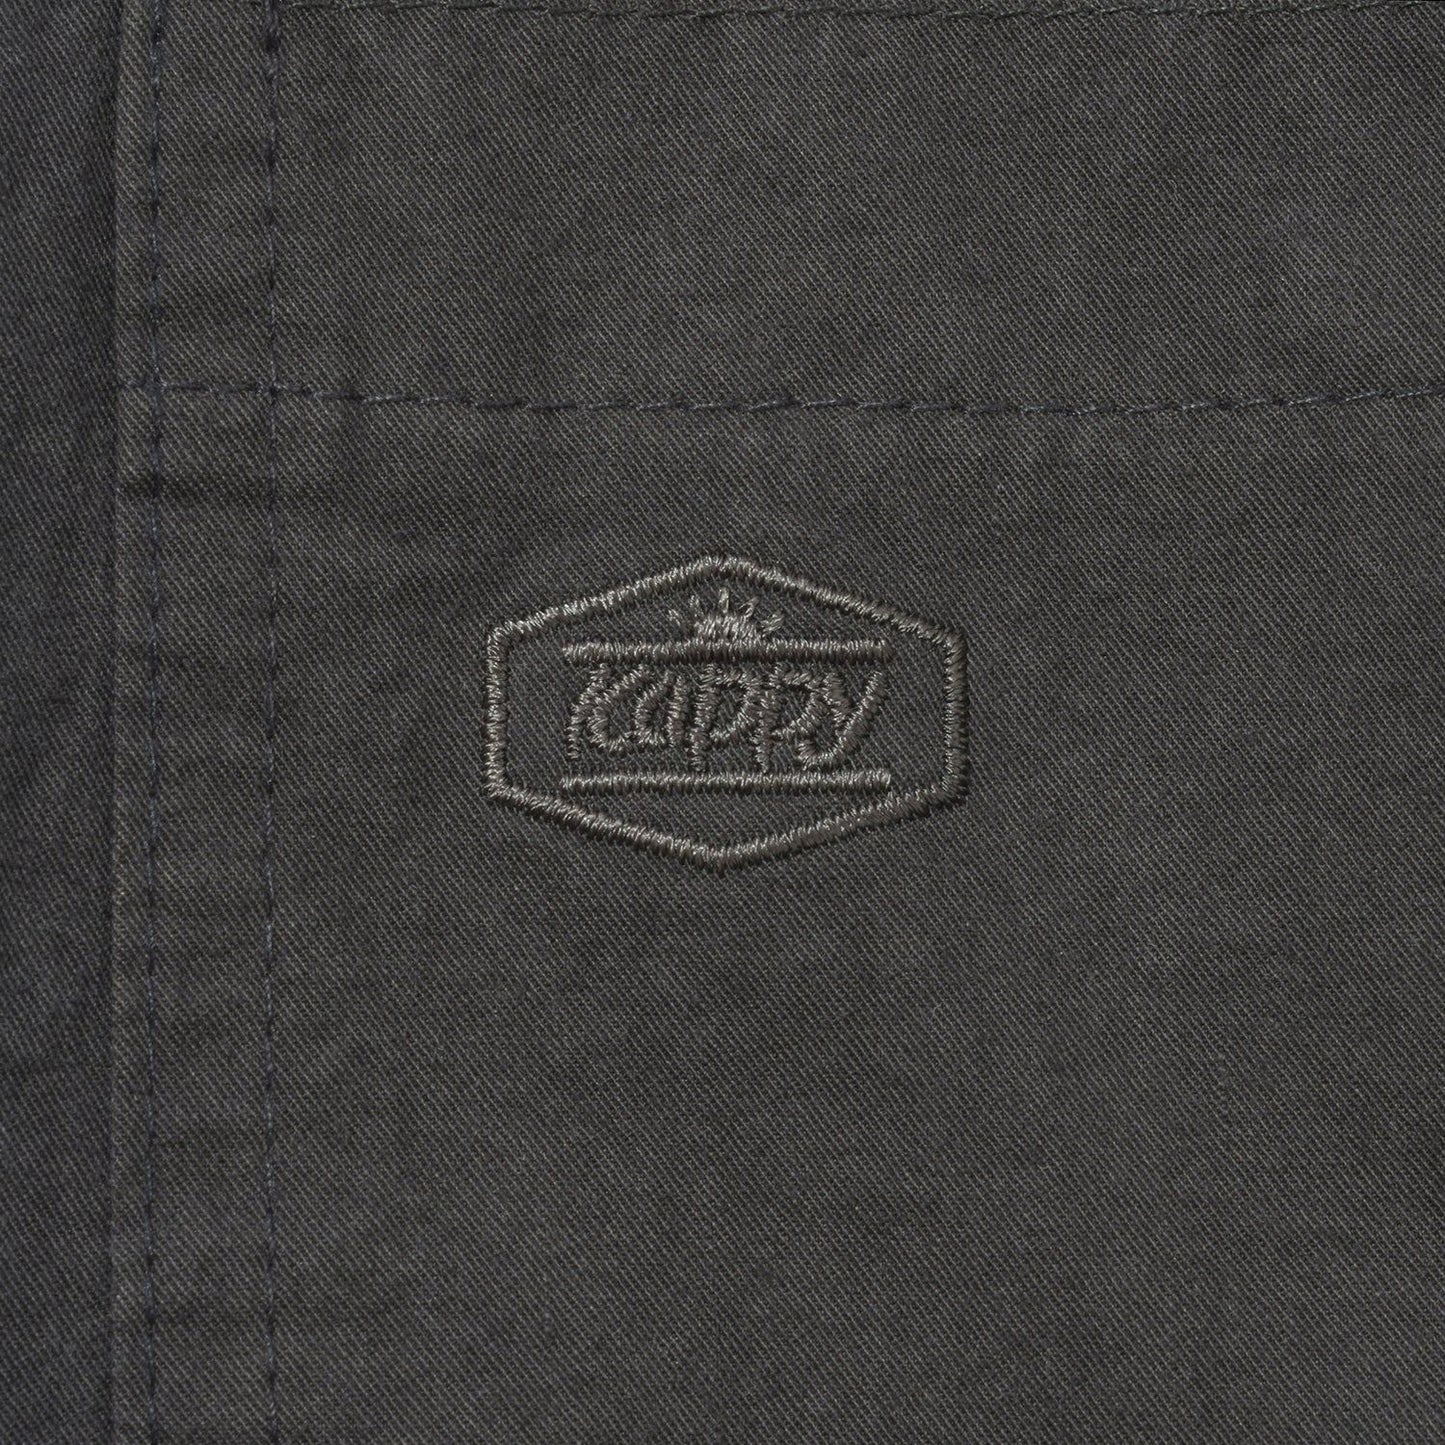 Kappy SS24 U Pants One Tuck Wide Fatigue Pants, Charcoal